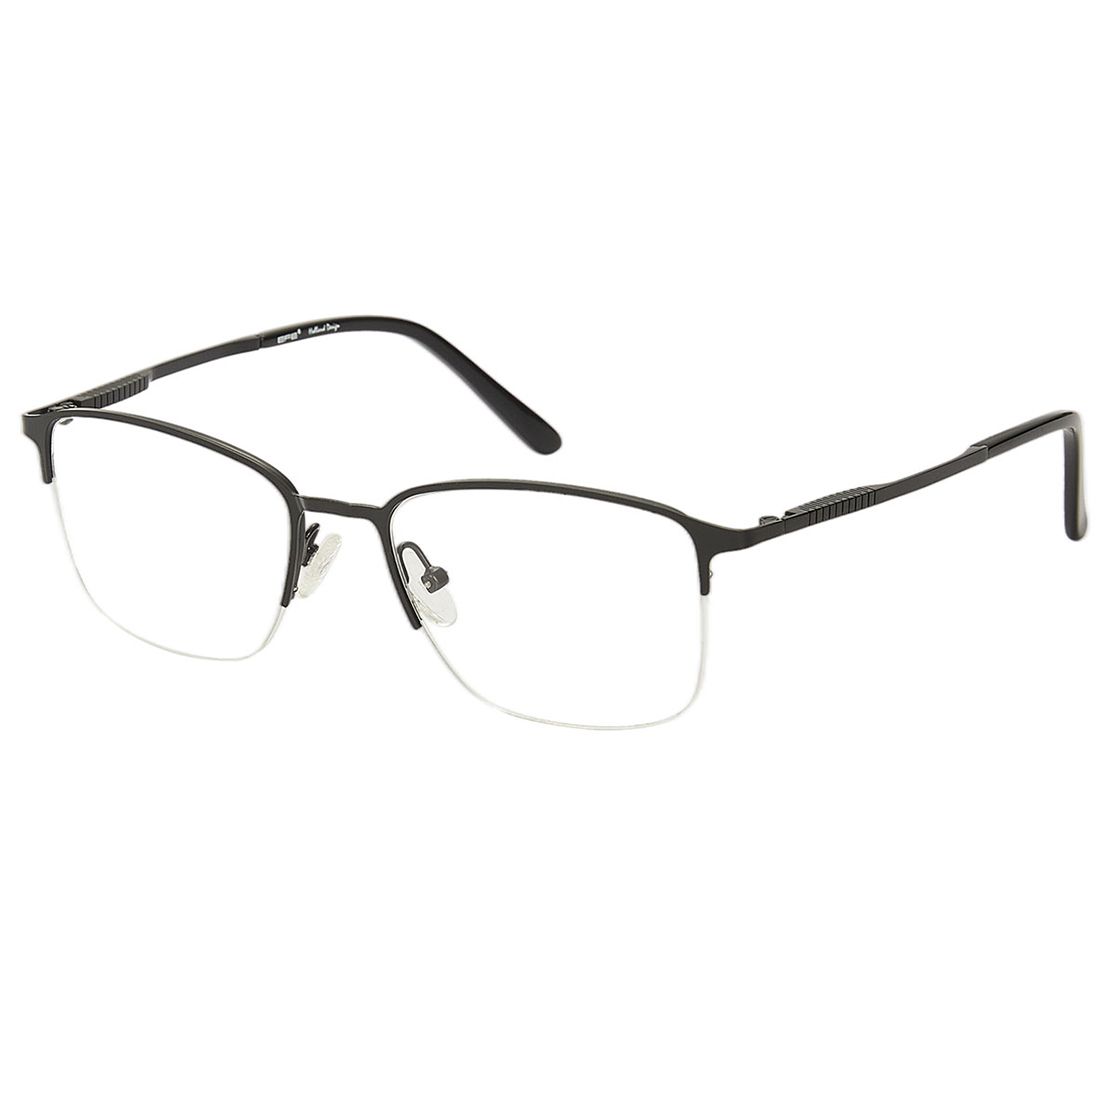 Nereus - Rectangle Black Reading Glasses for Men